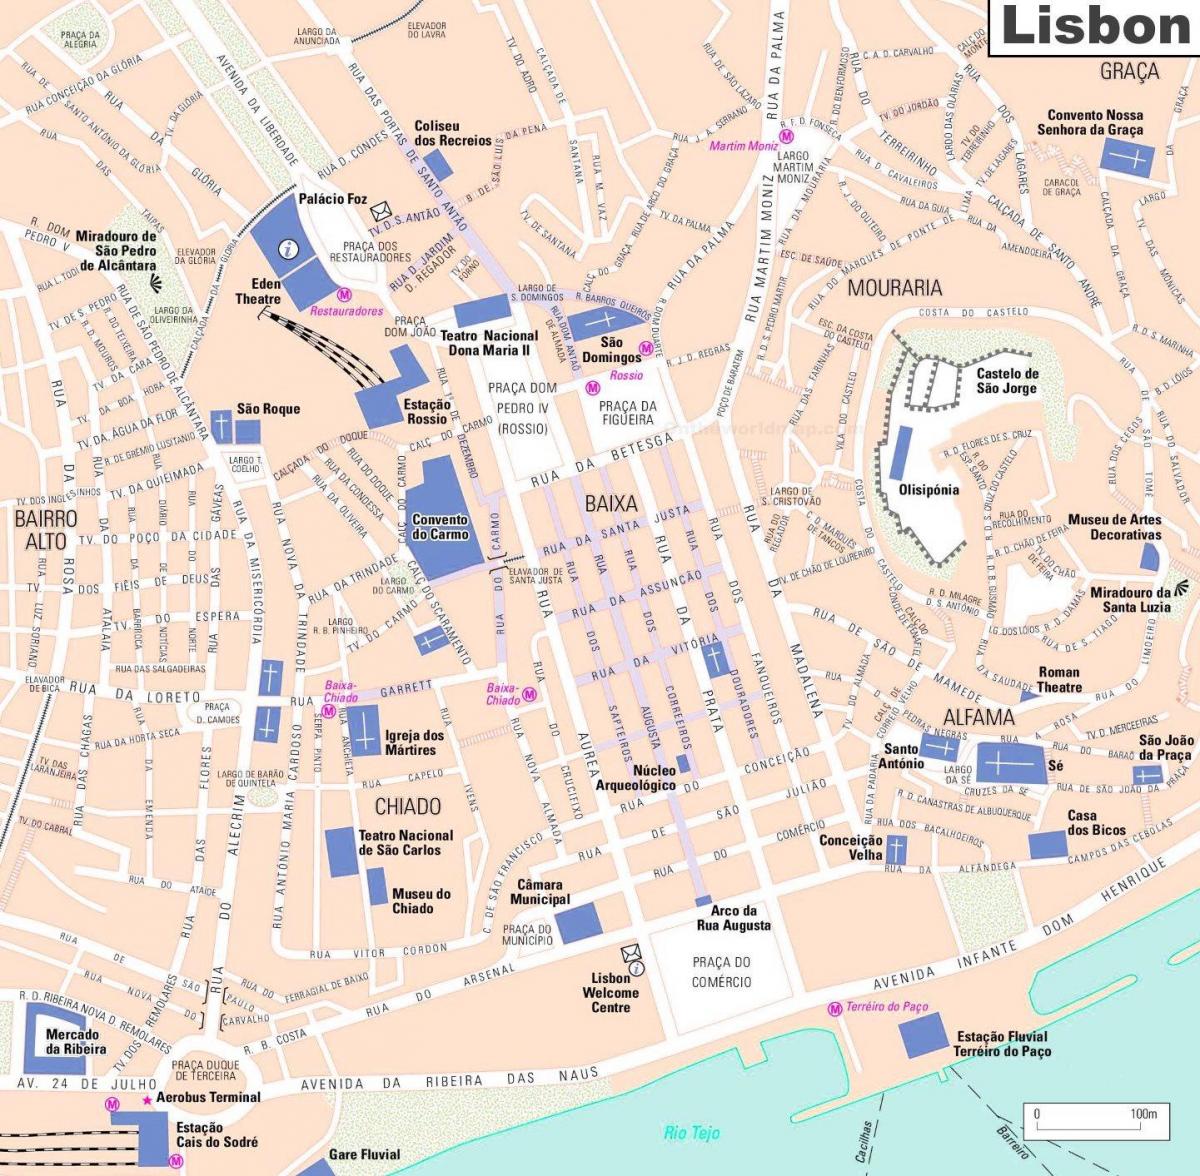 Lissabon-Orten von Interesse anzeigen